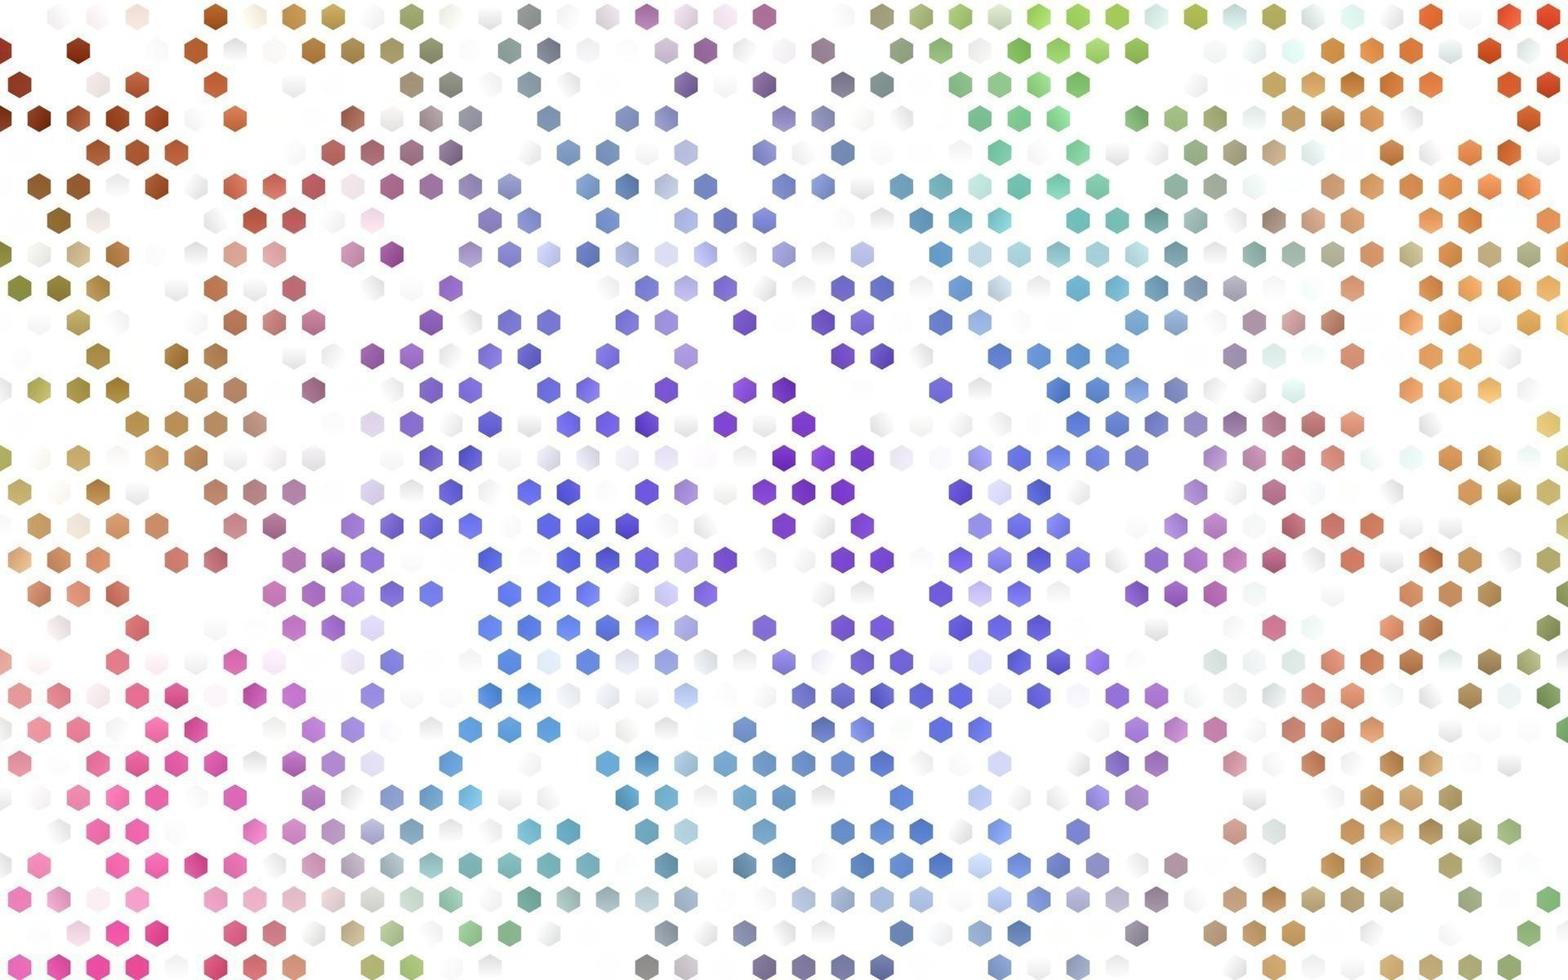 helles, mehrfarbiges, regenbogenfarbenes Vektormuster mit bunten Sechsecken. vektor